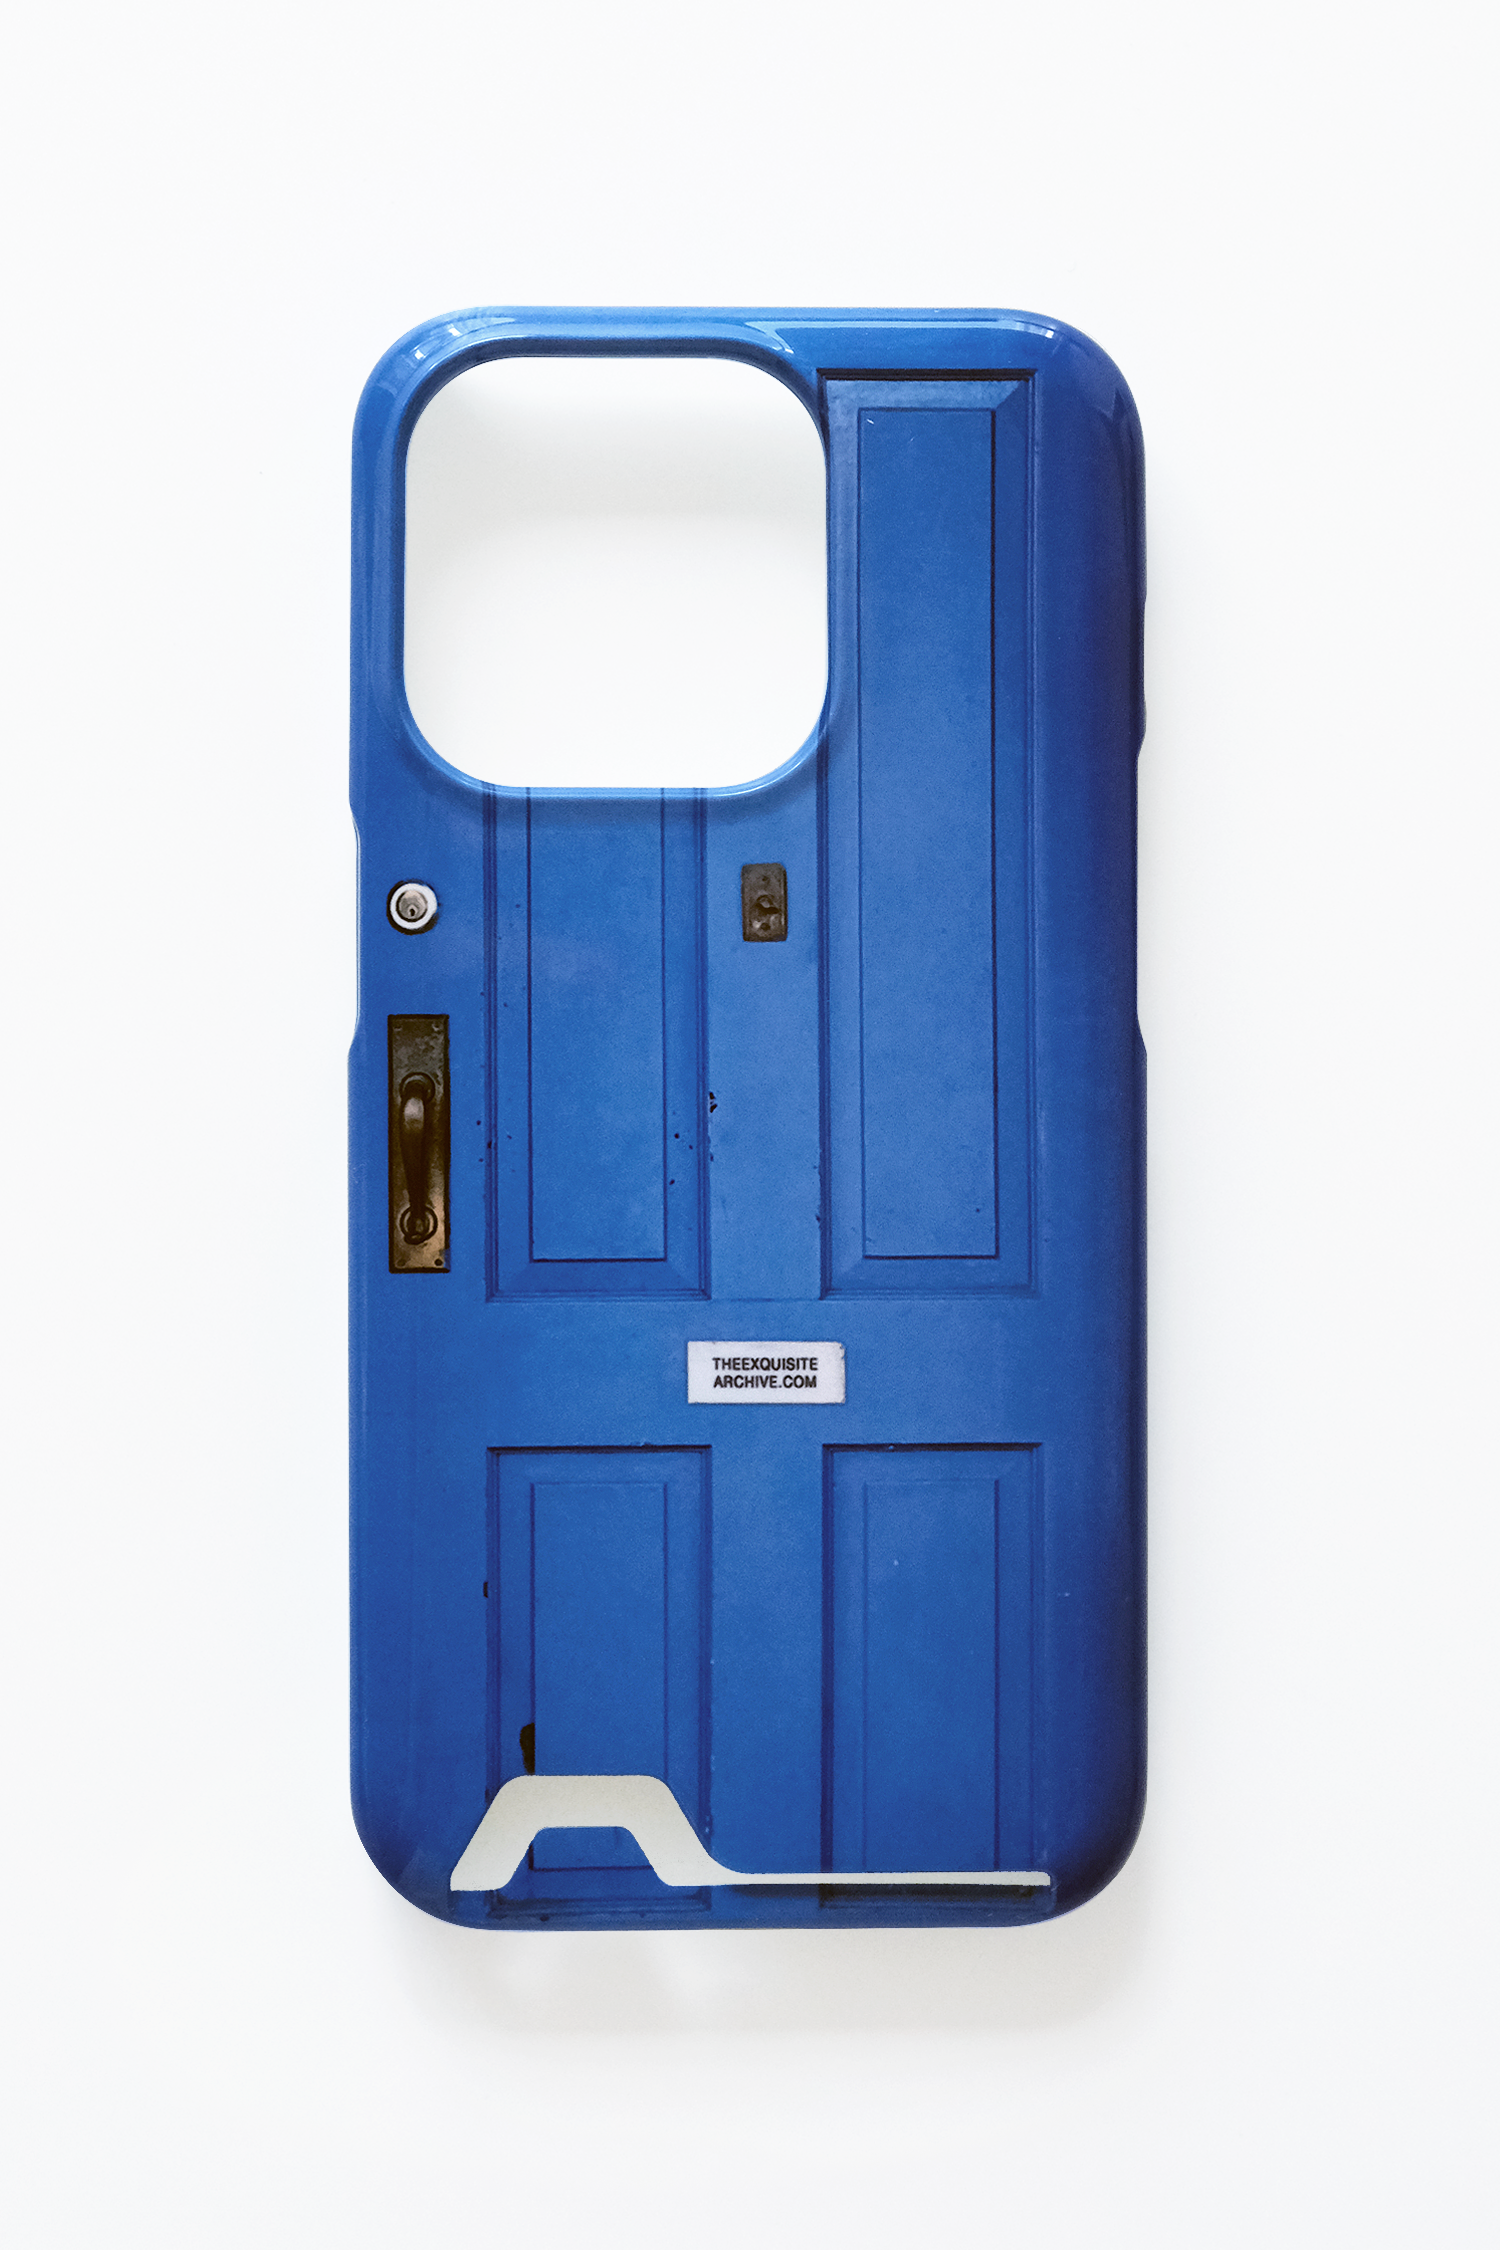 (Card) Permanent blue door